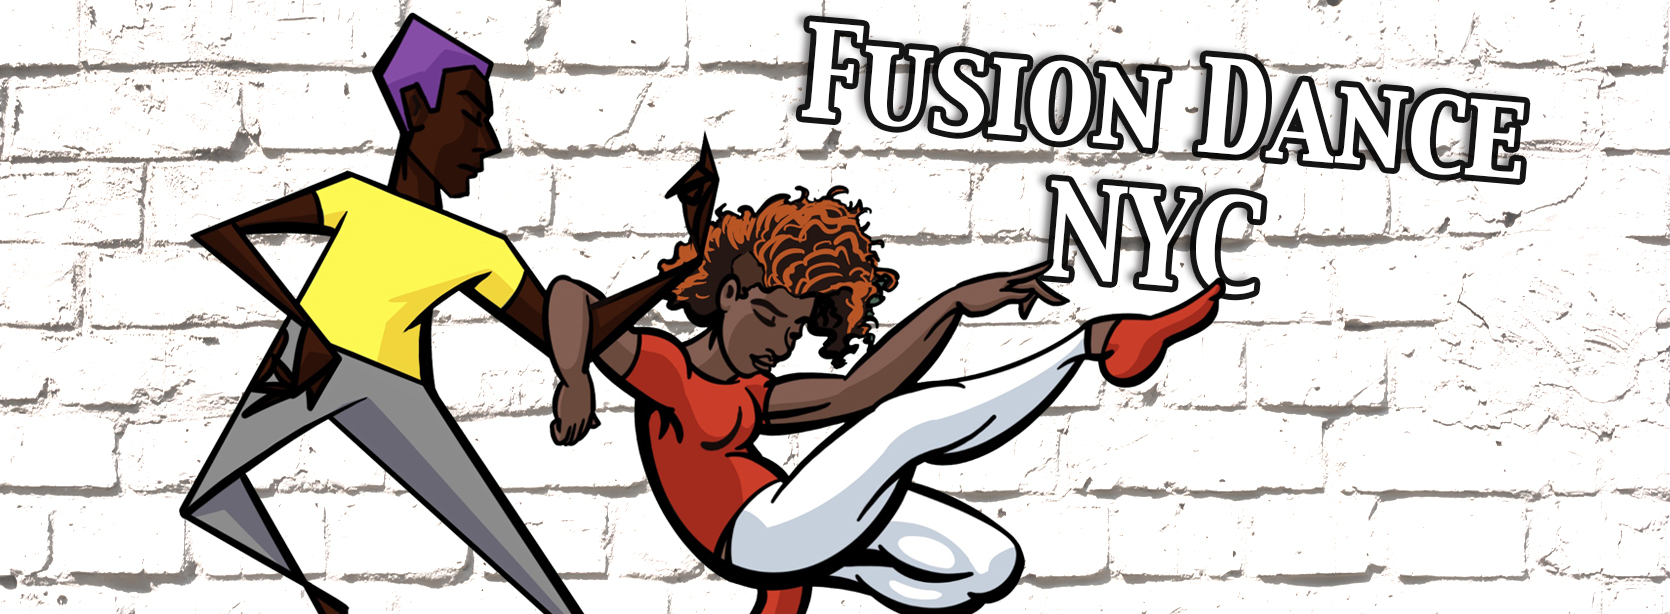 Tag: <span>fusion dance teacher</span>